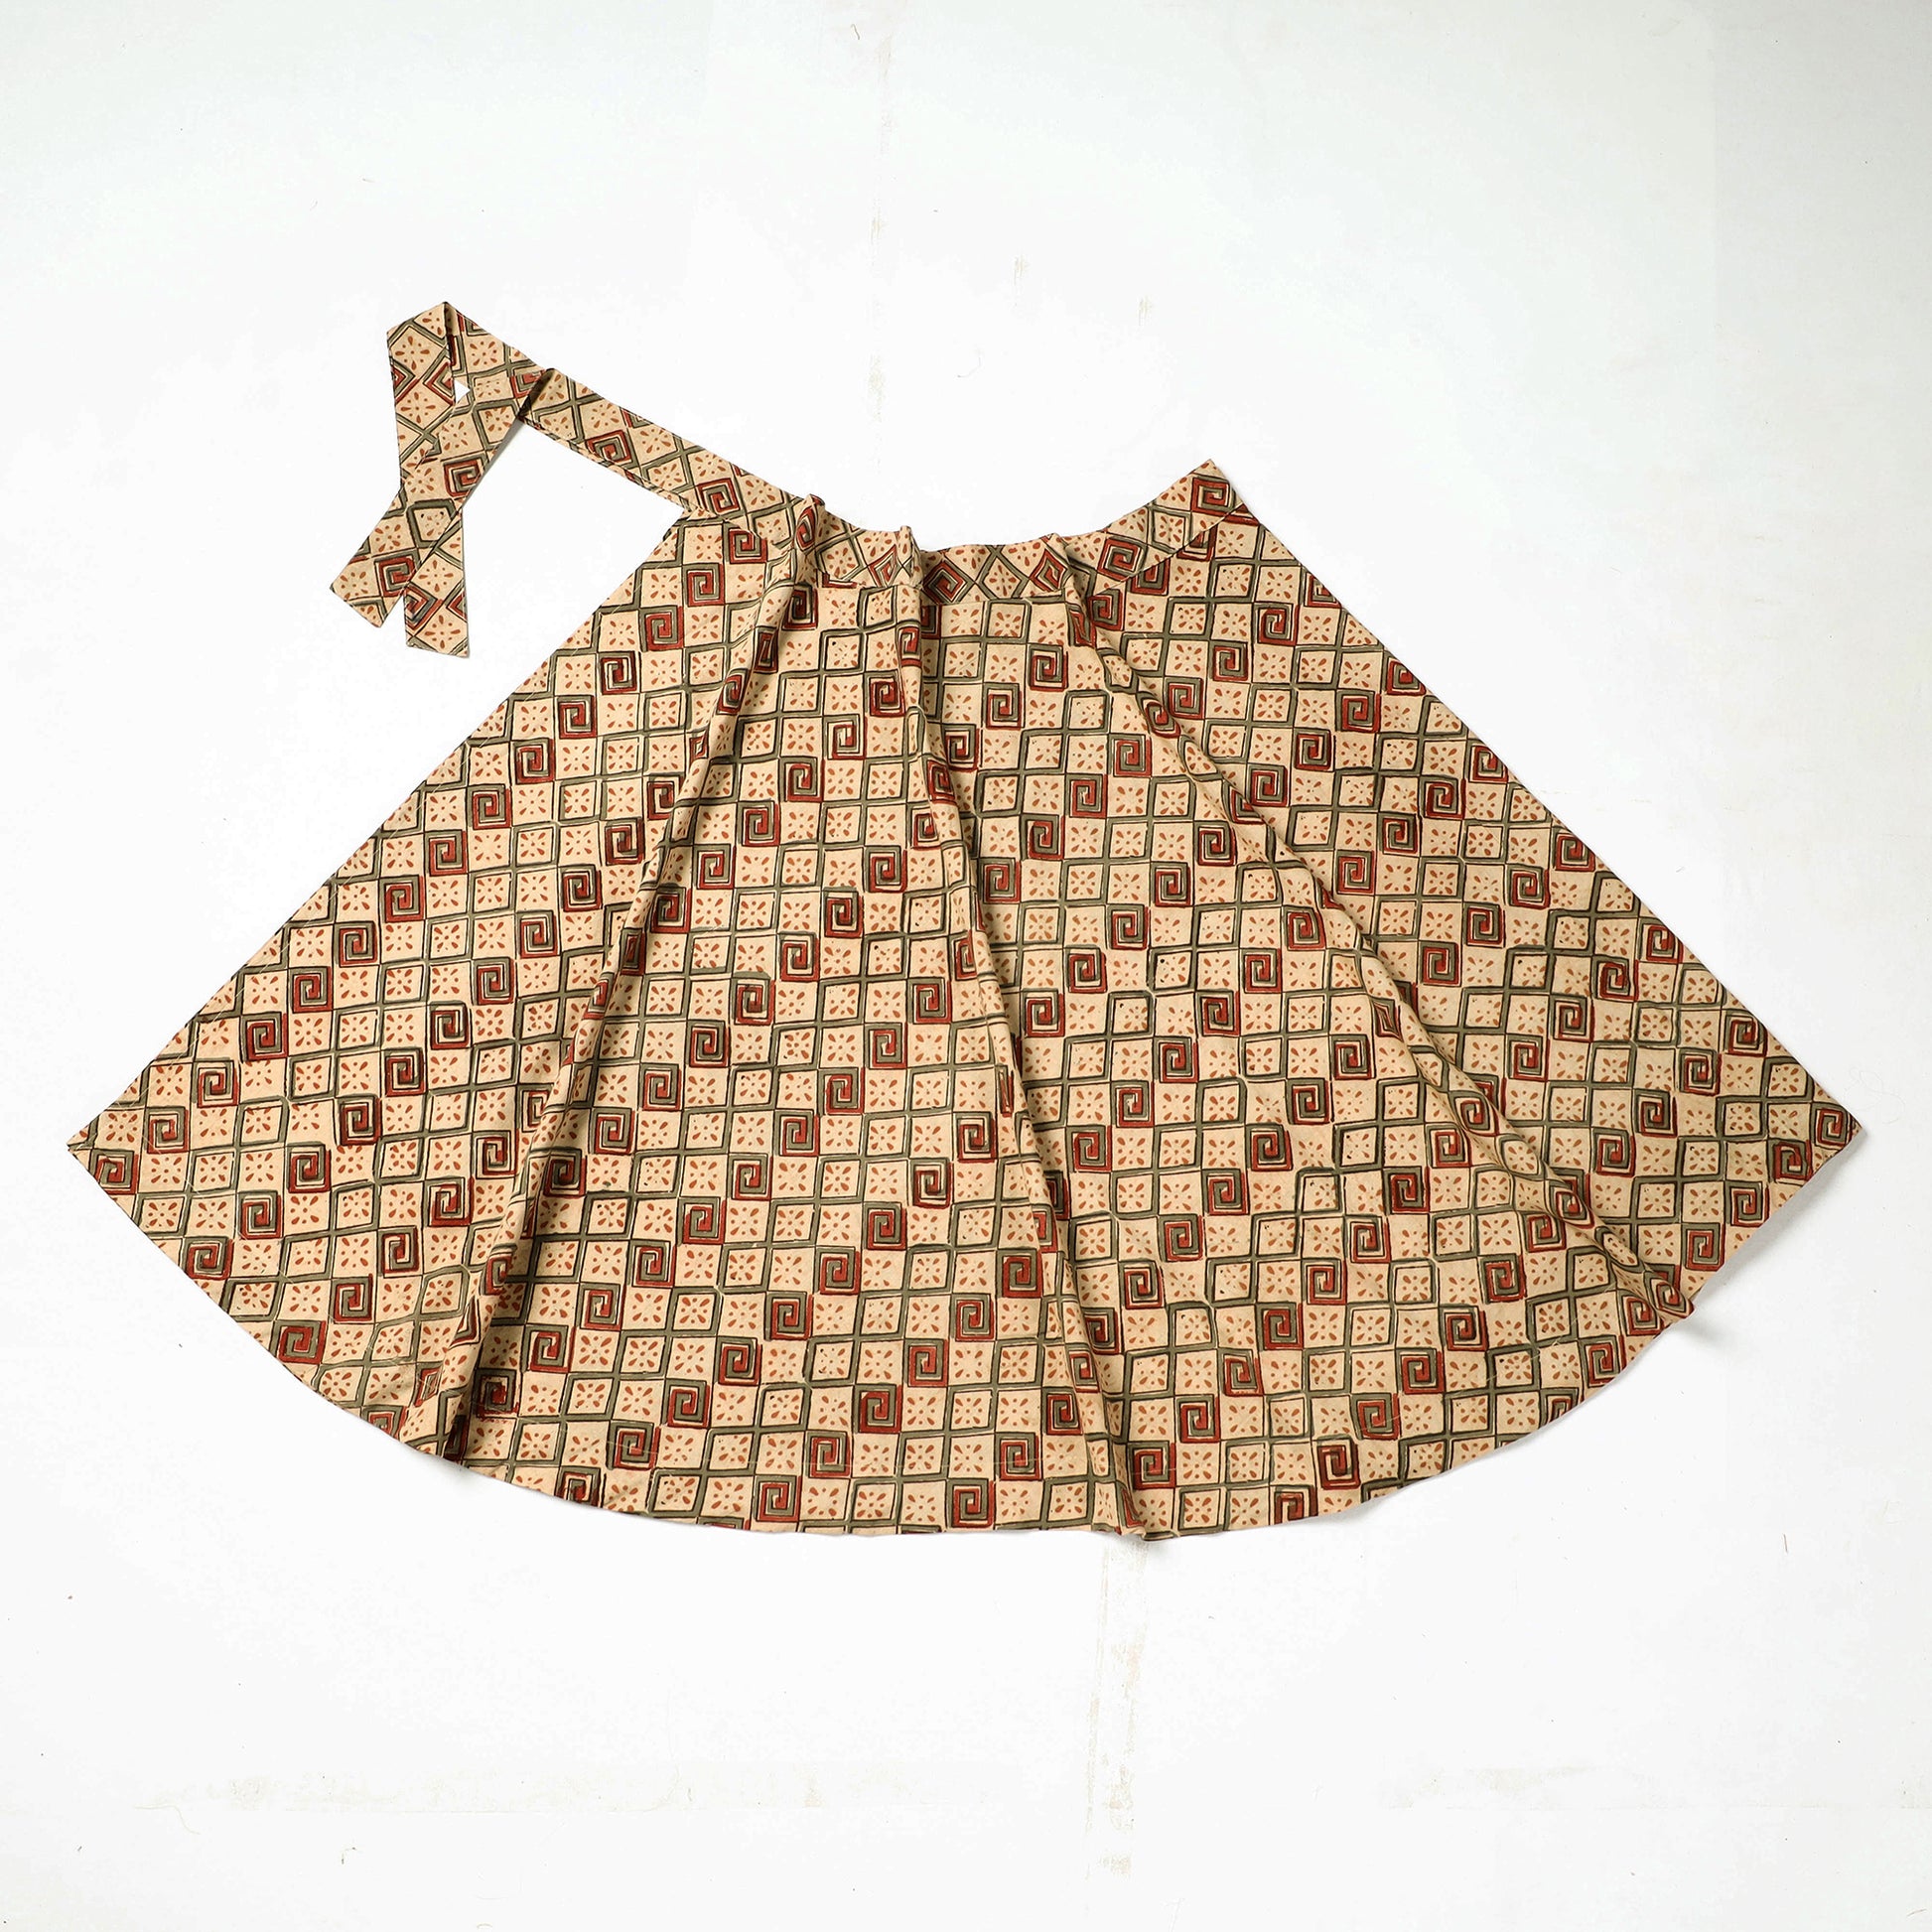  Kalamkari Skirt
